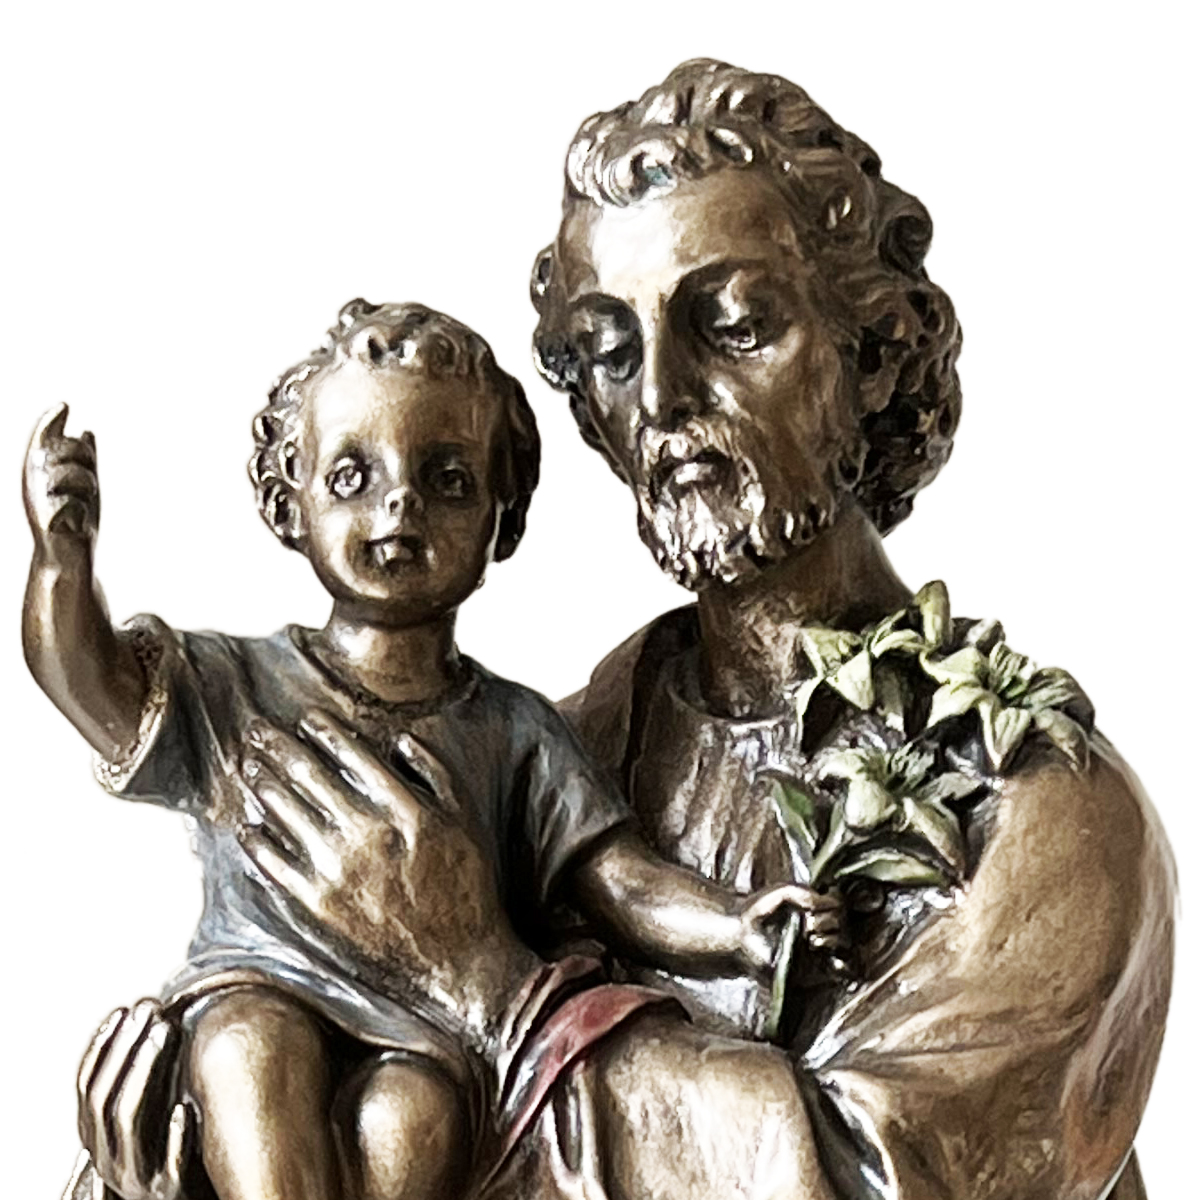 Statuette Saint Joseph de couleur bronze